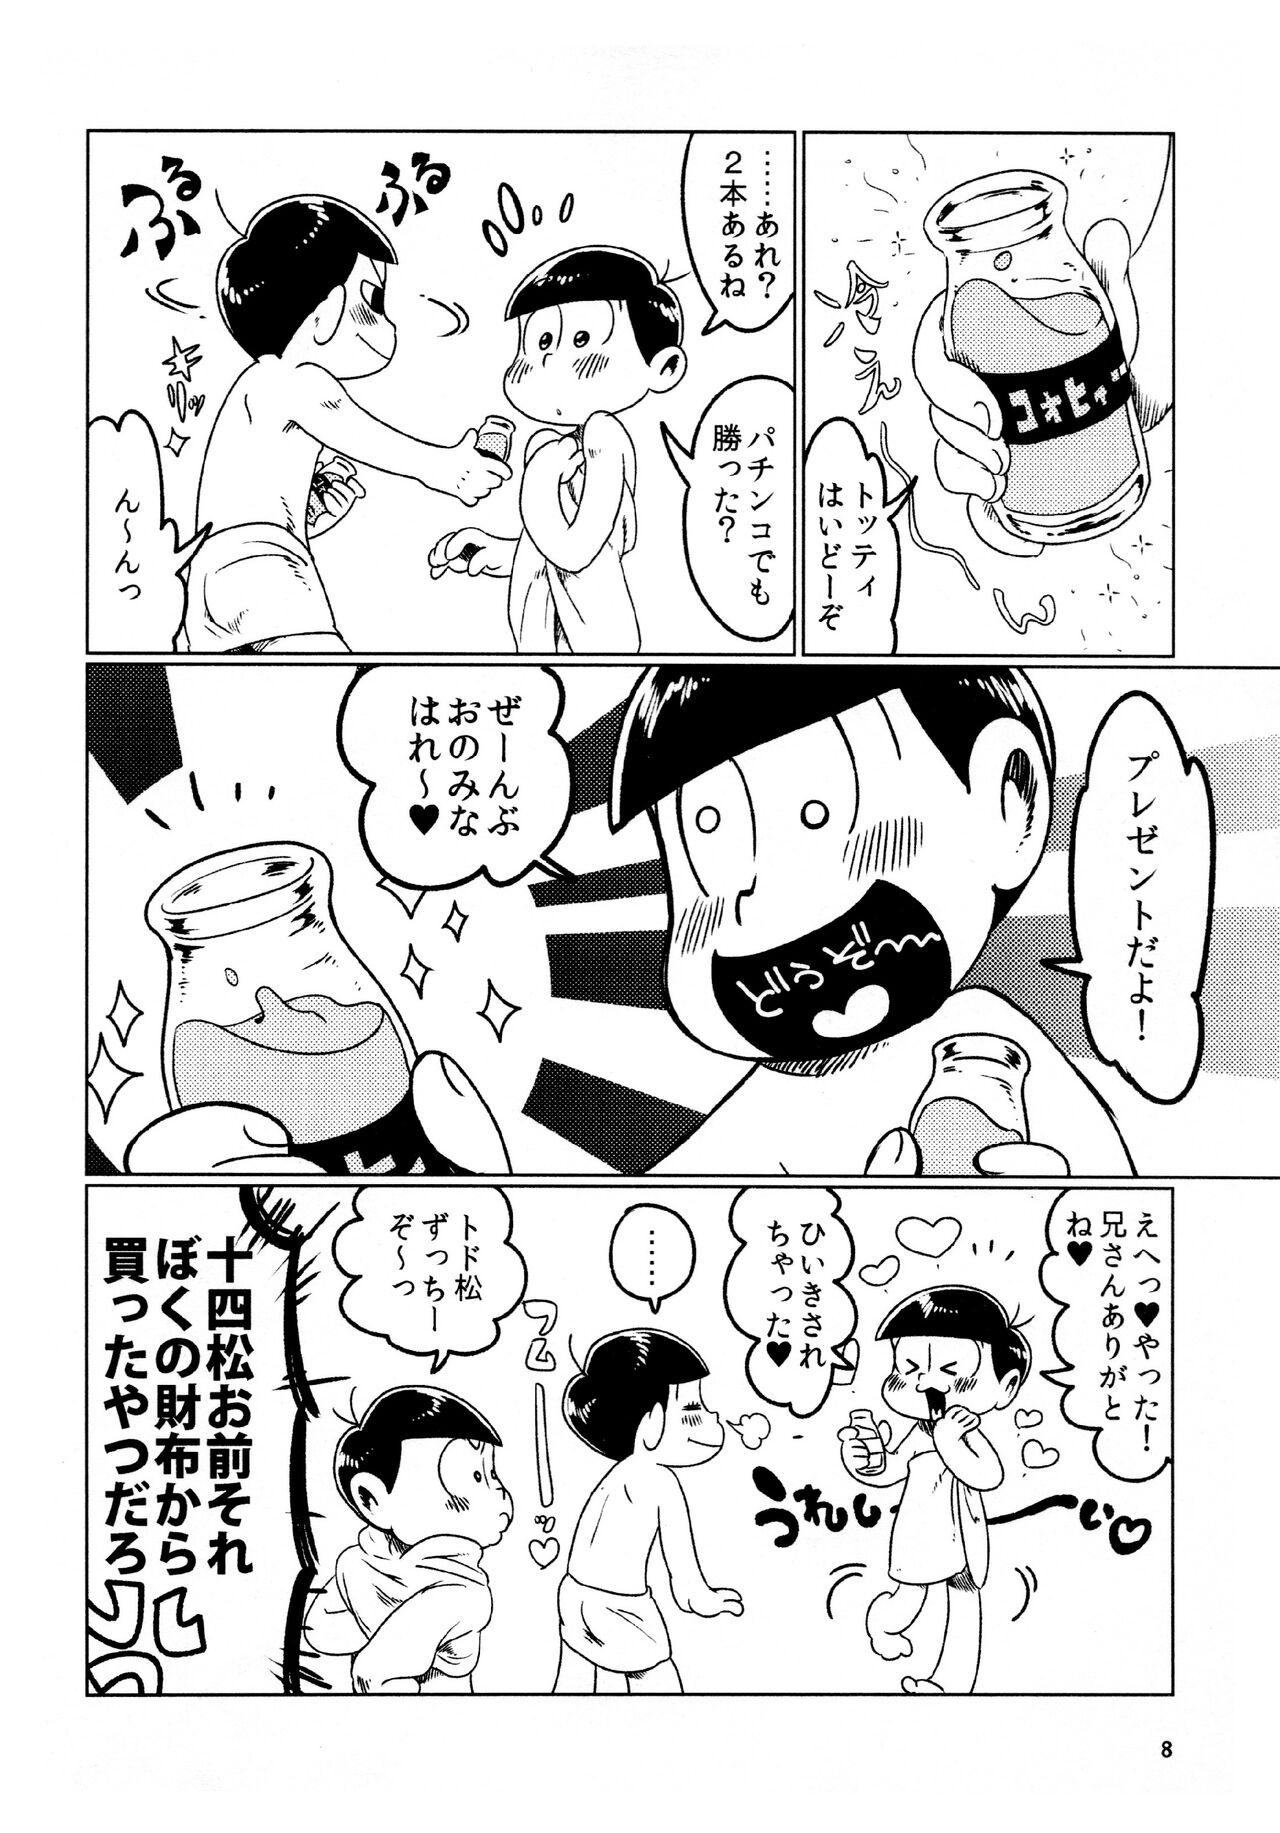 Piercing todomatsu bishi yonurekeikaku - Osomatsu-san Cojiendo - Page 8